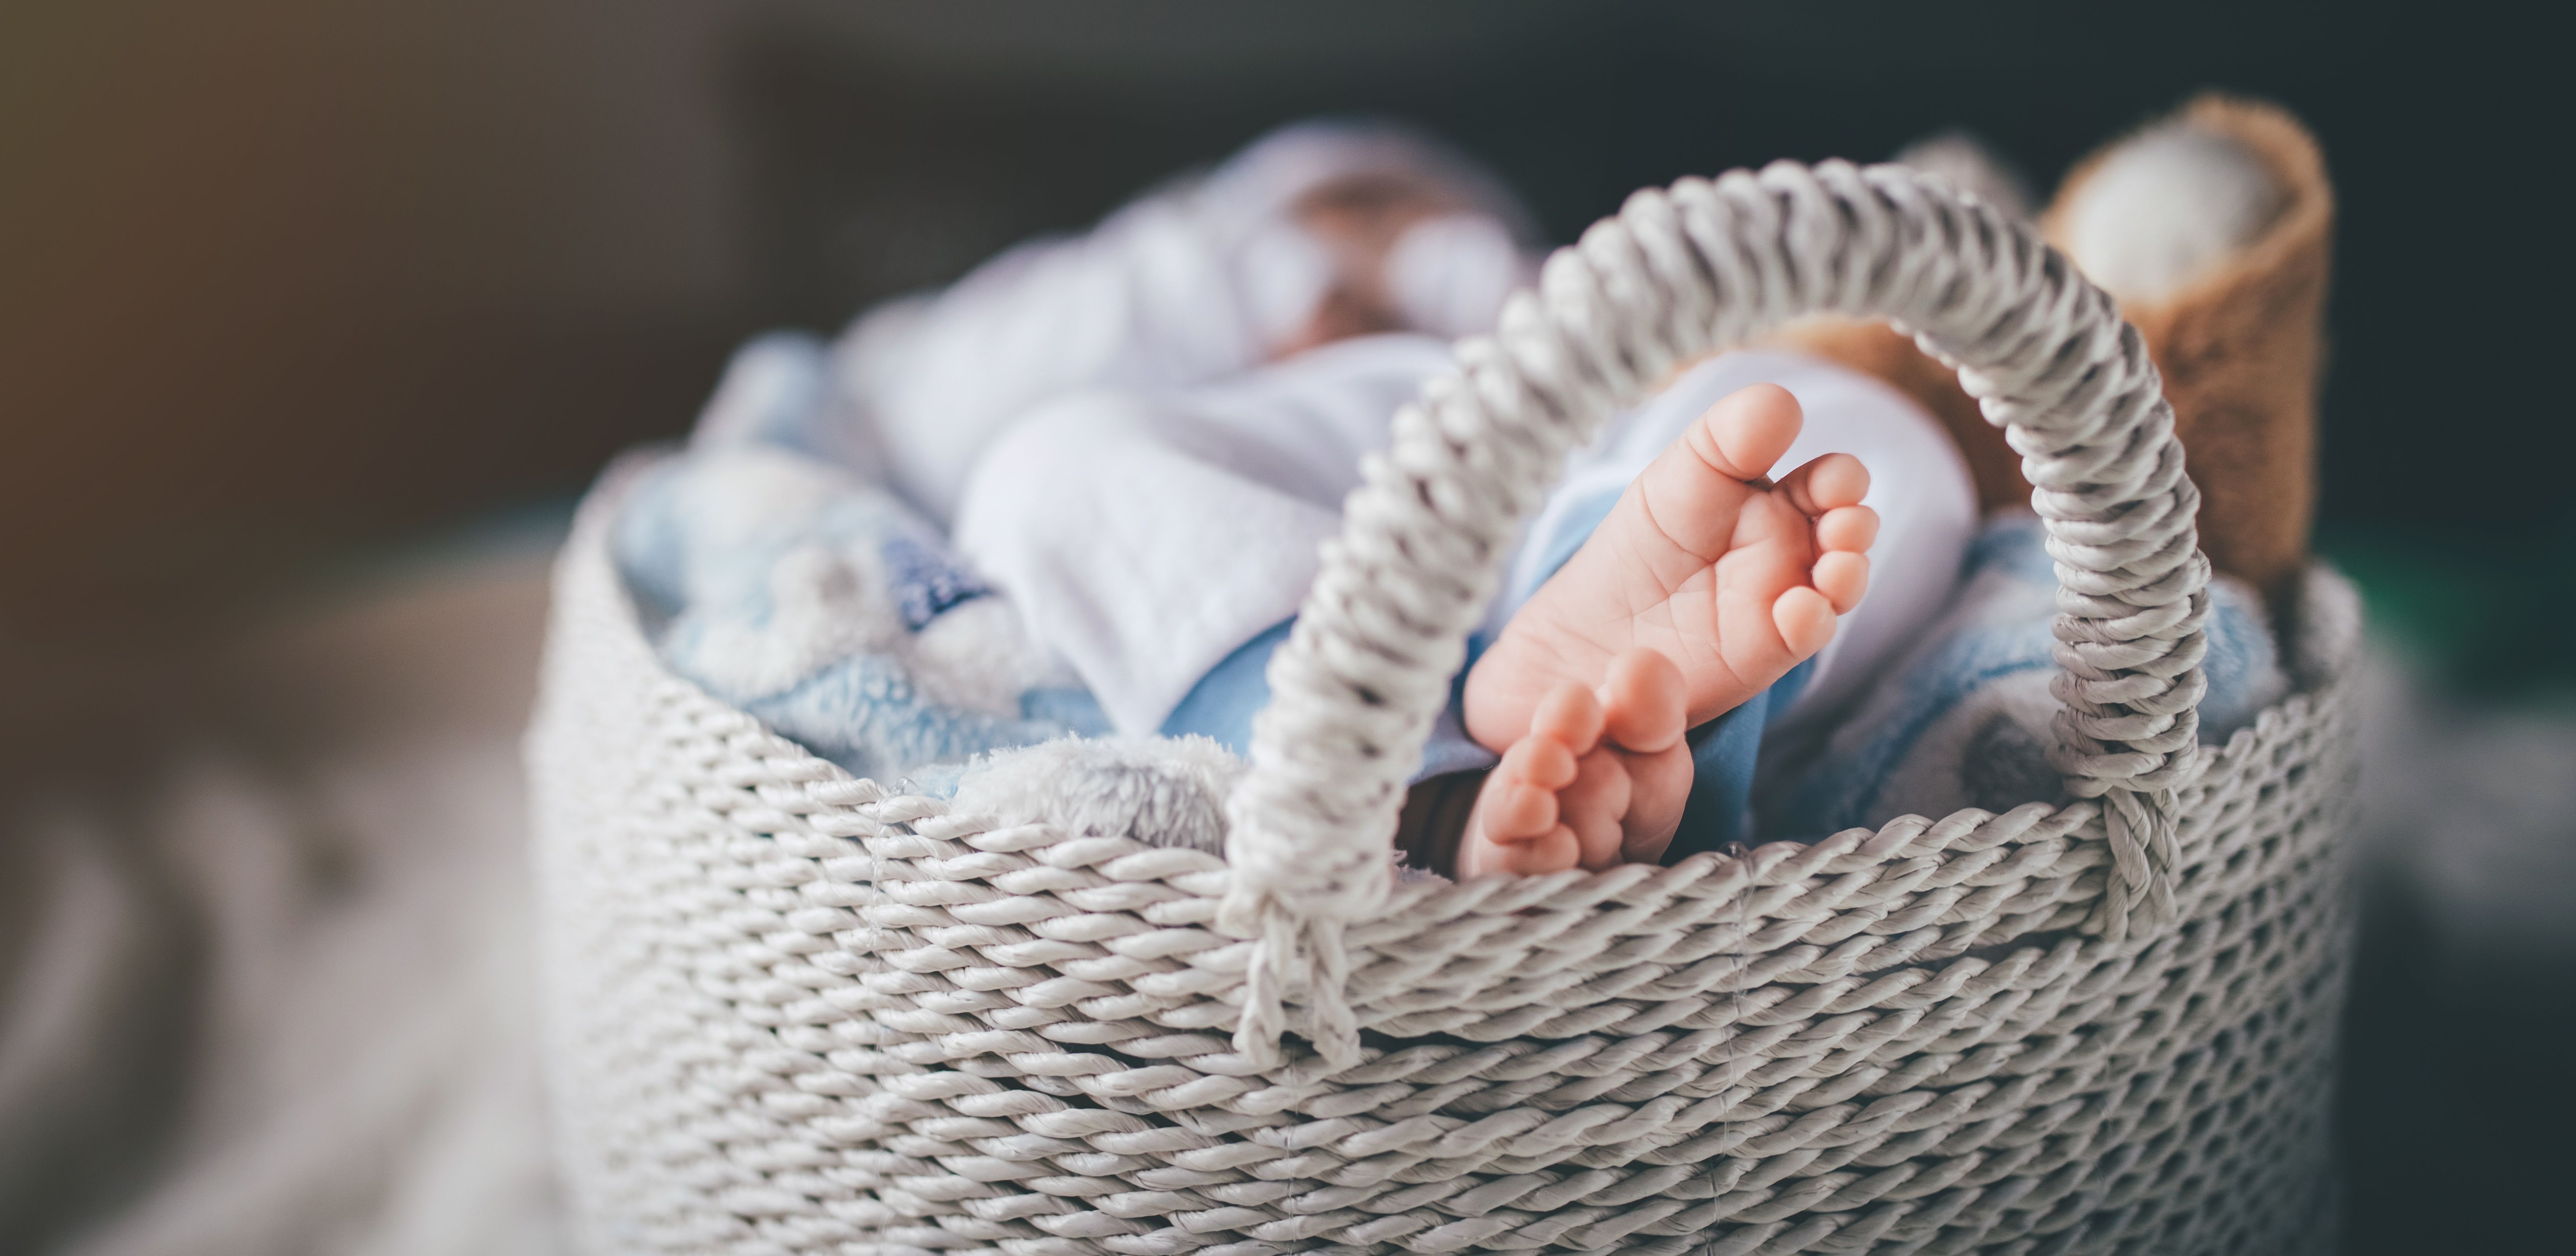 Les pieds d'un nouveau-né dans un panier | Source : Getty Images